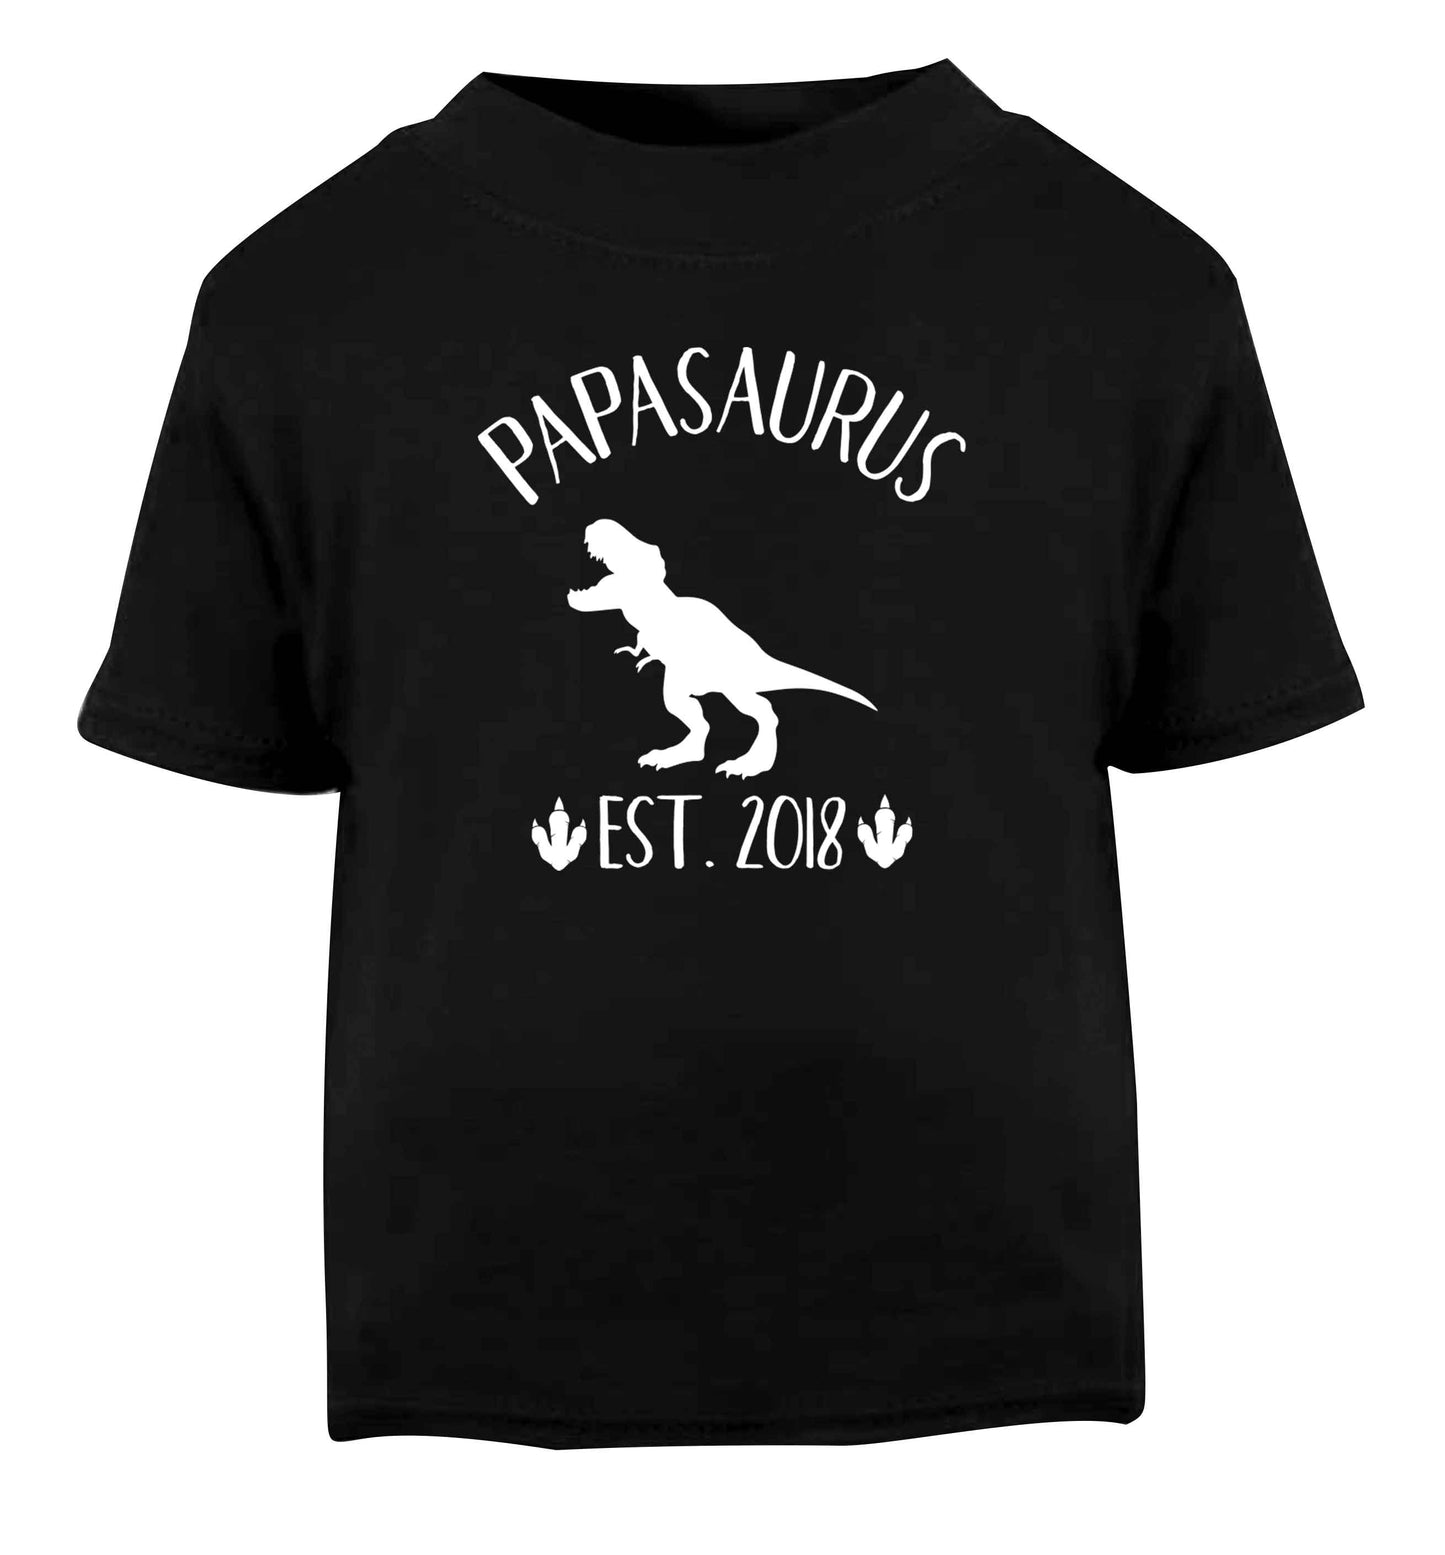 Personalised papasaurus since (custom date) Black Baby Toddler Tshirt 2 years